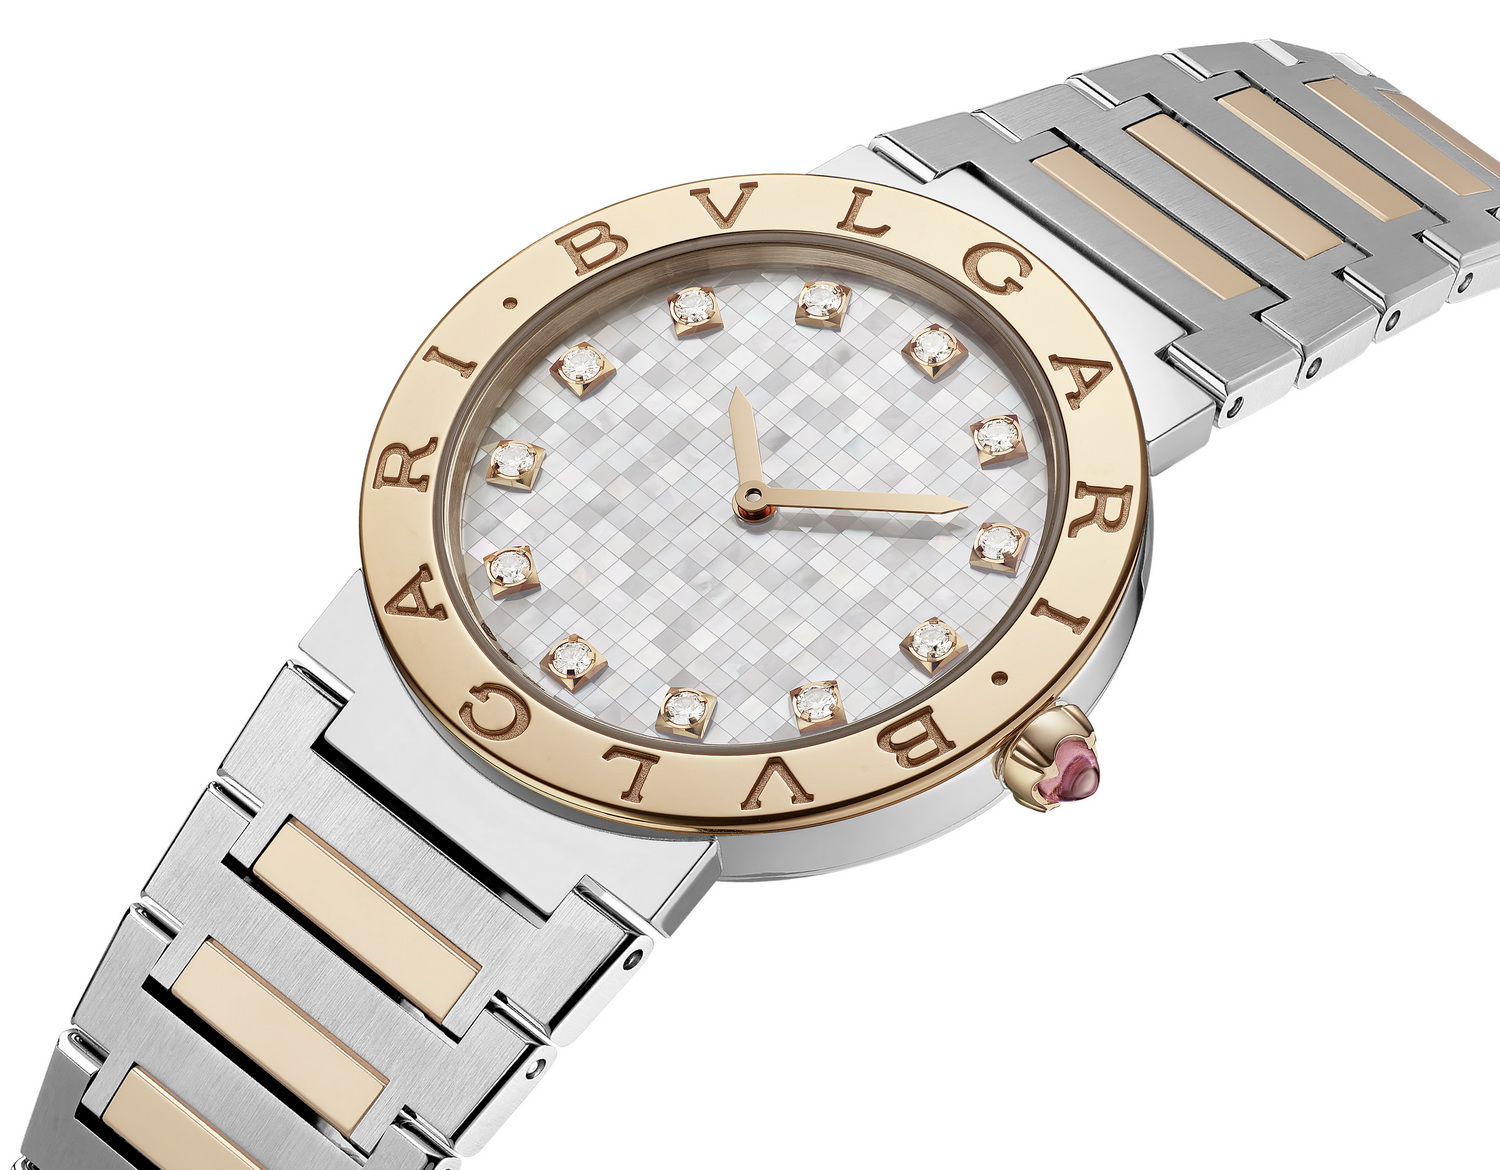 Lisa hợp tác cùng Bvlgari ra mắt bộ sưu tập đồng hồ giới hạn